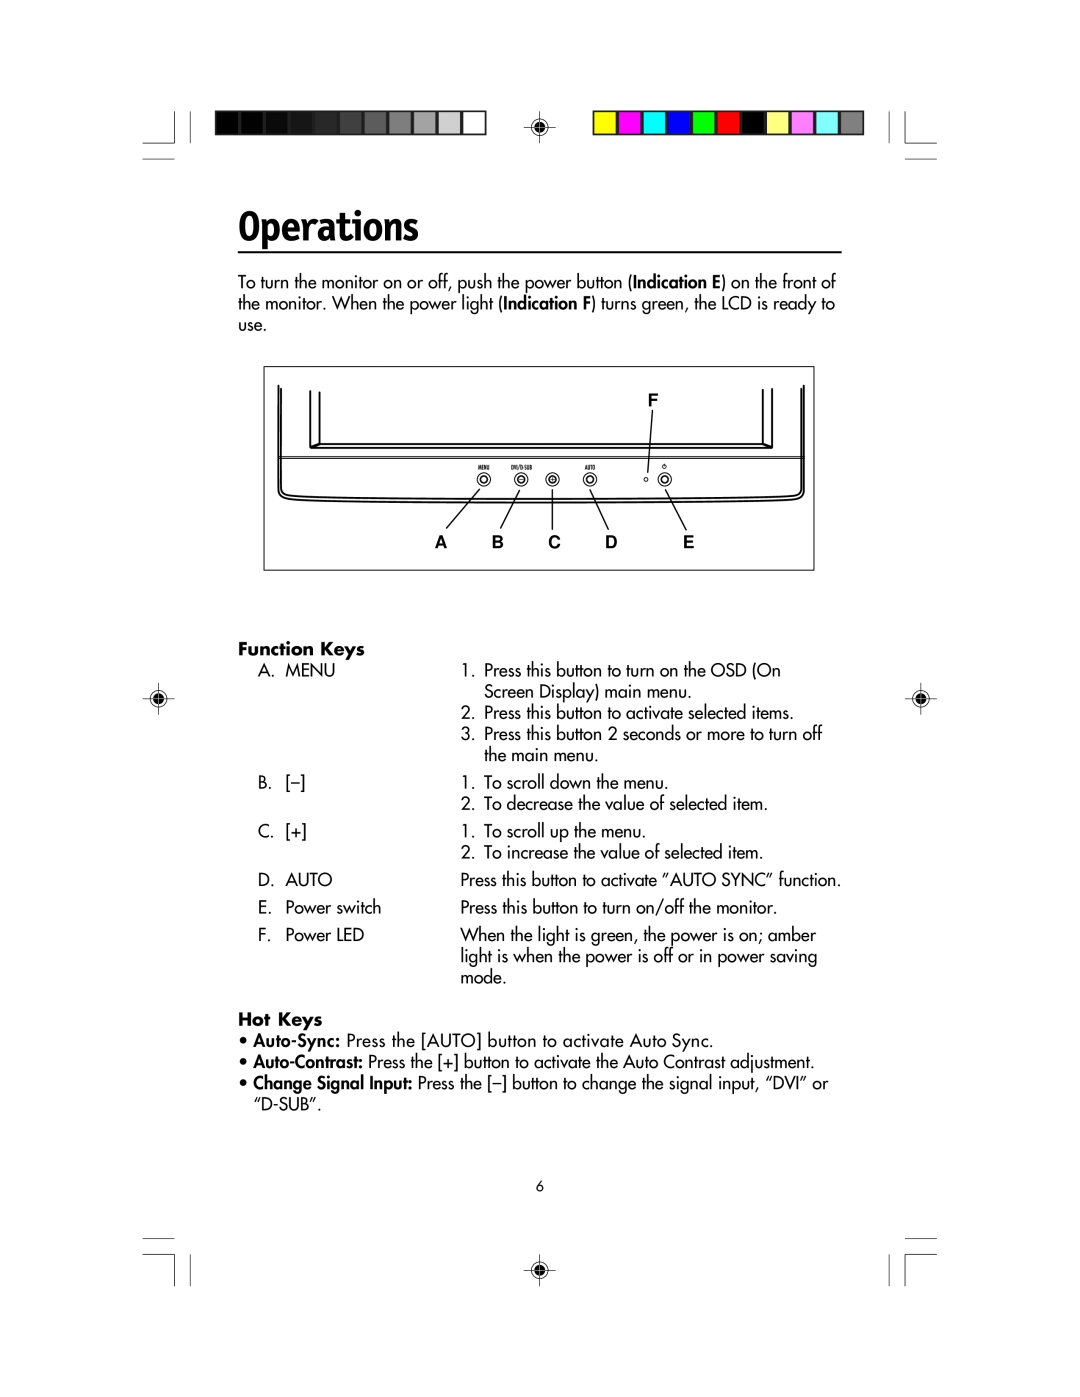 NEC LCD1920NX manual Operations, Function Keys, Hot Keys 